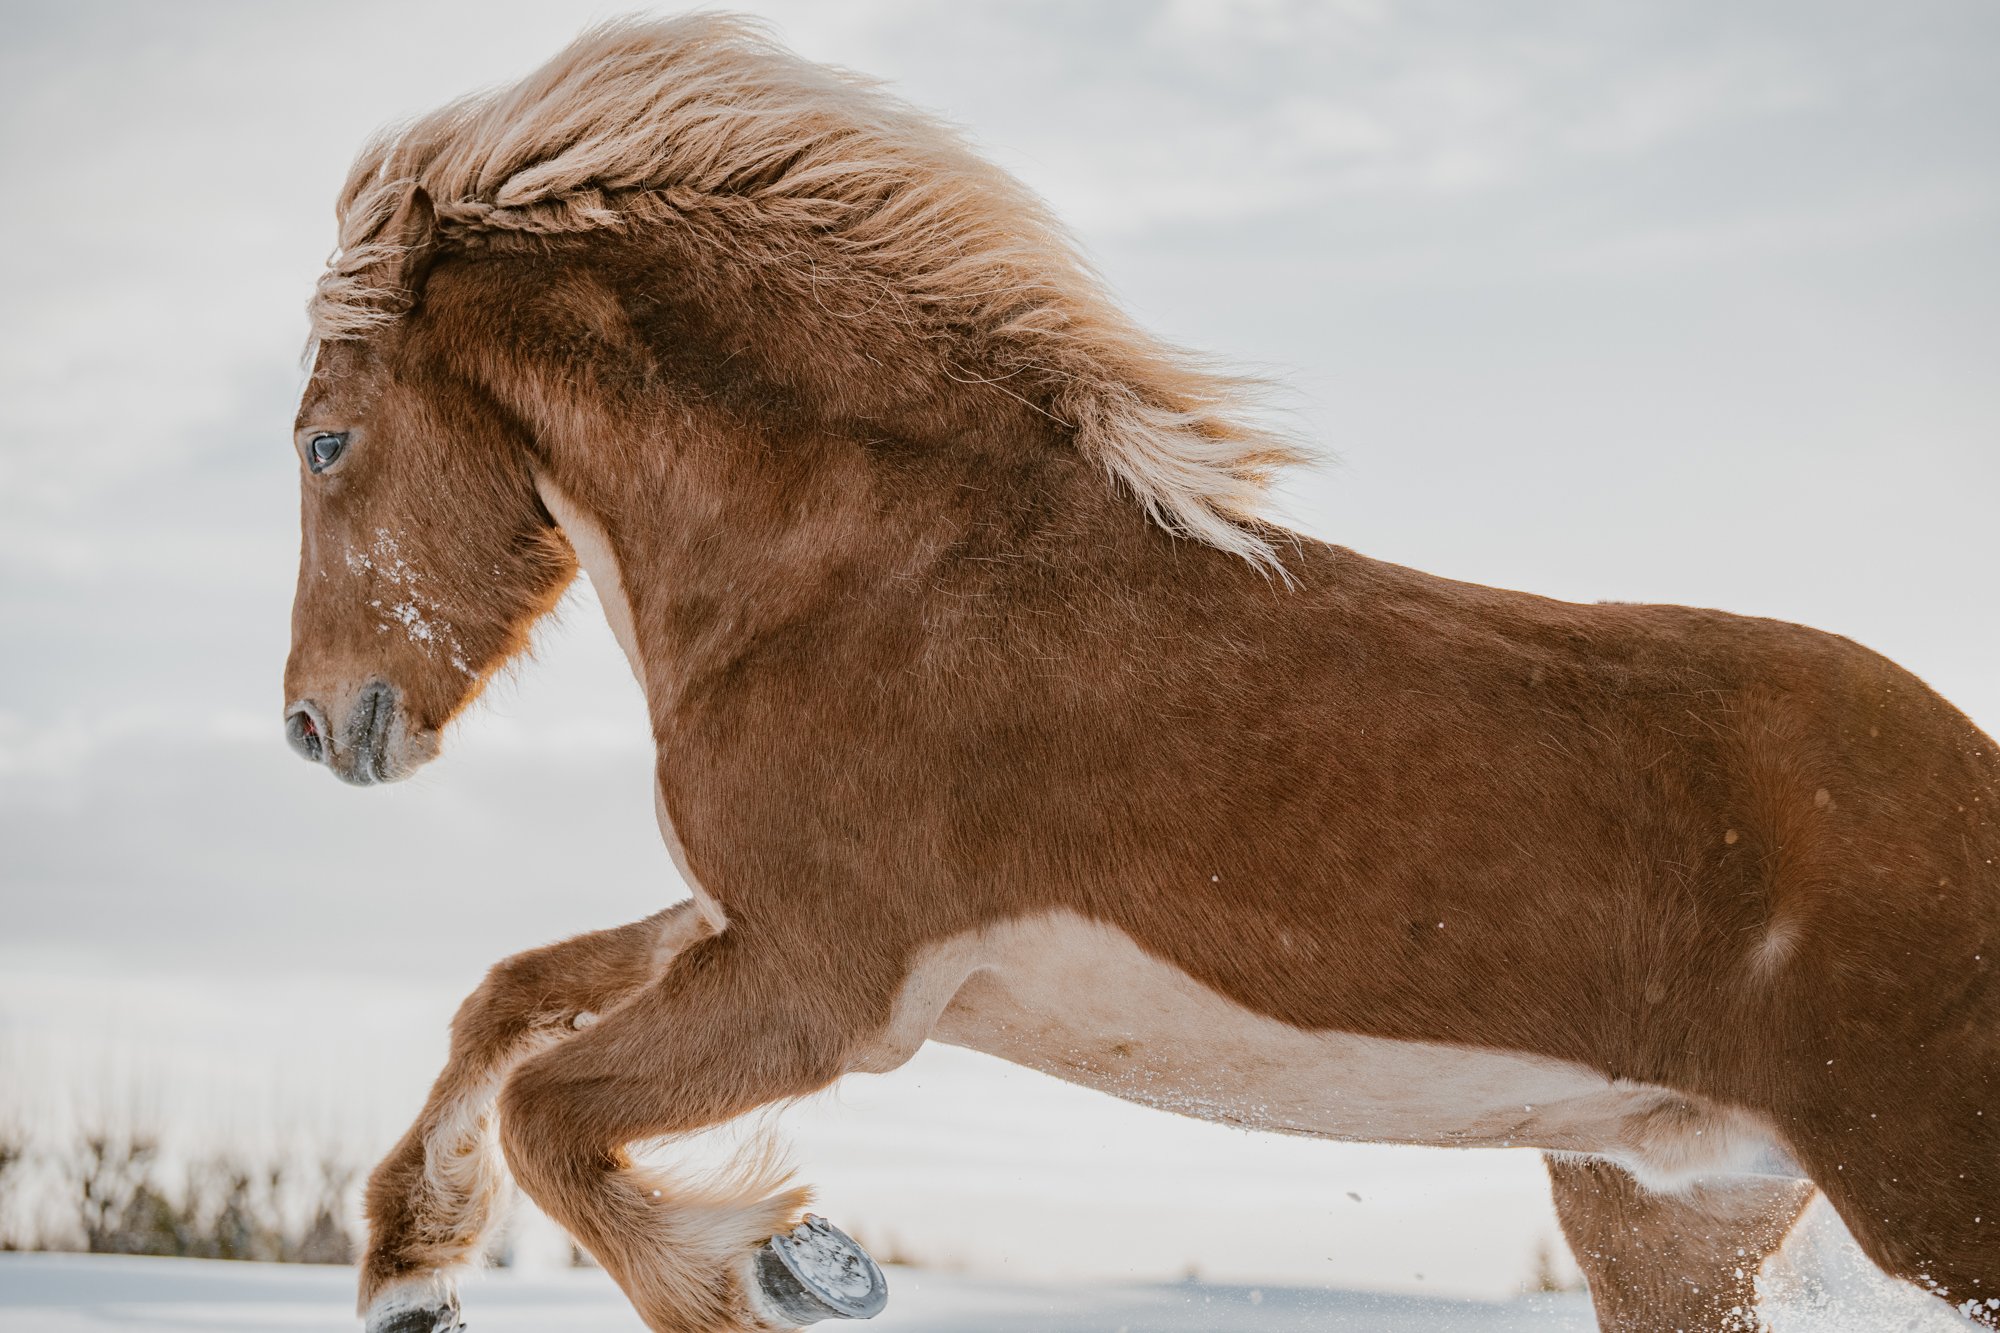 Cùng xem ảnh của những chú ngựa ở Iceland - Một nét biểu tượng văn hoá ở xứ sở băng đảo